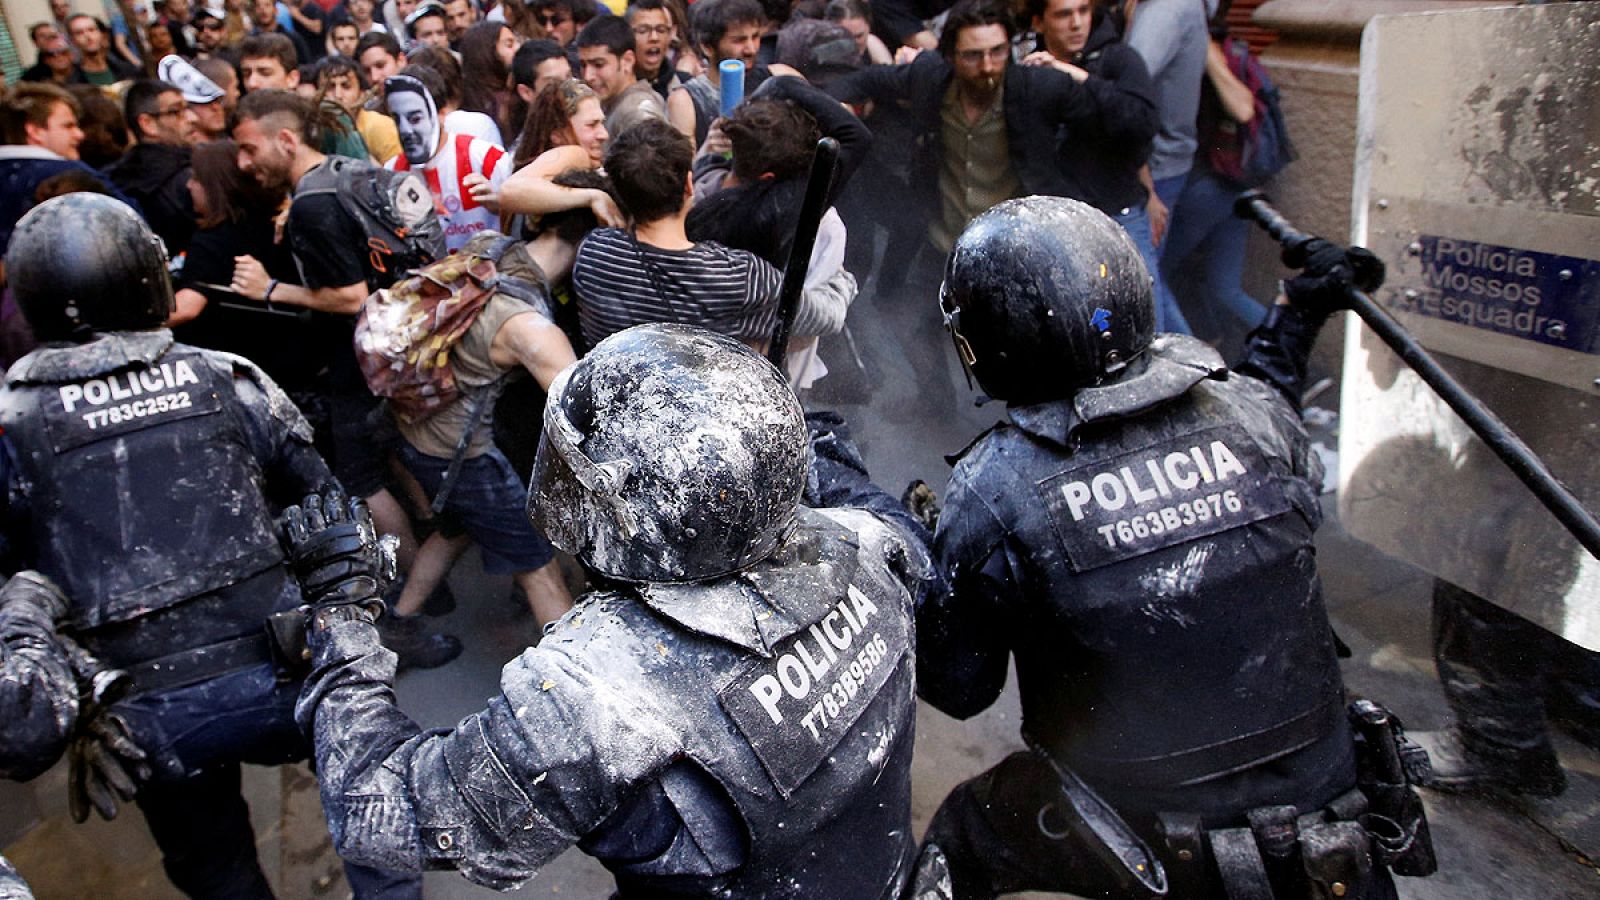 Los mossos responden al lanzamiento de piedras y latas por parte de algunos manifestantes en el barrio de Gràcia